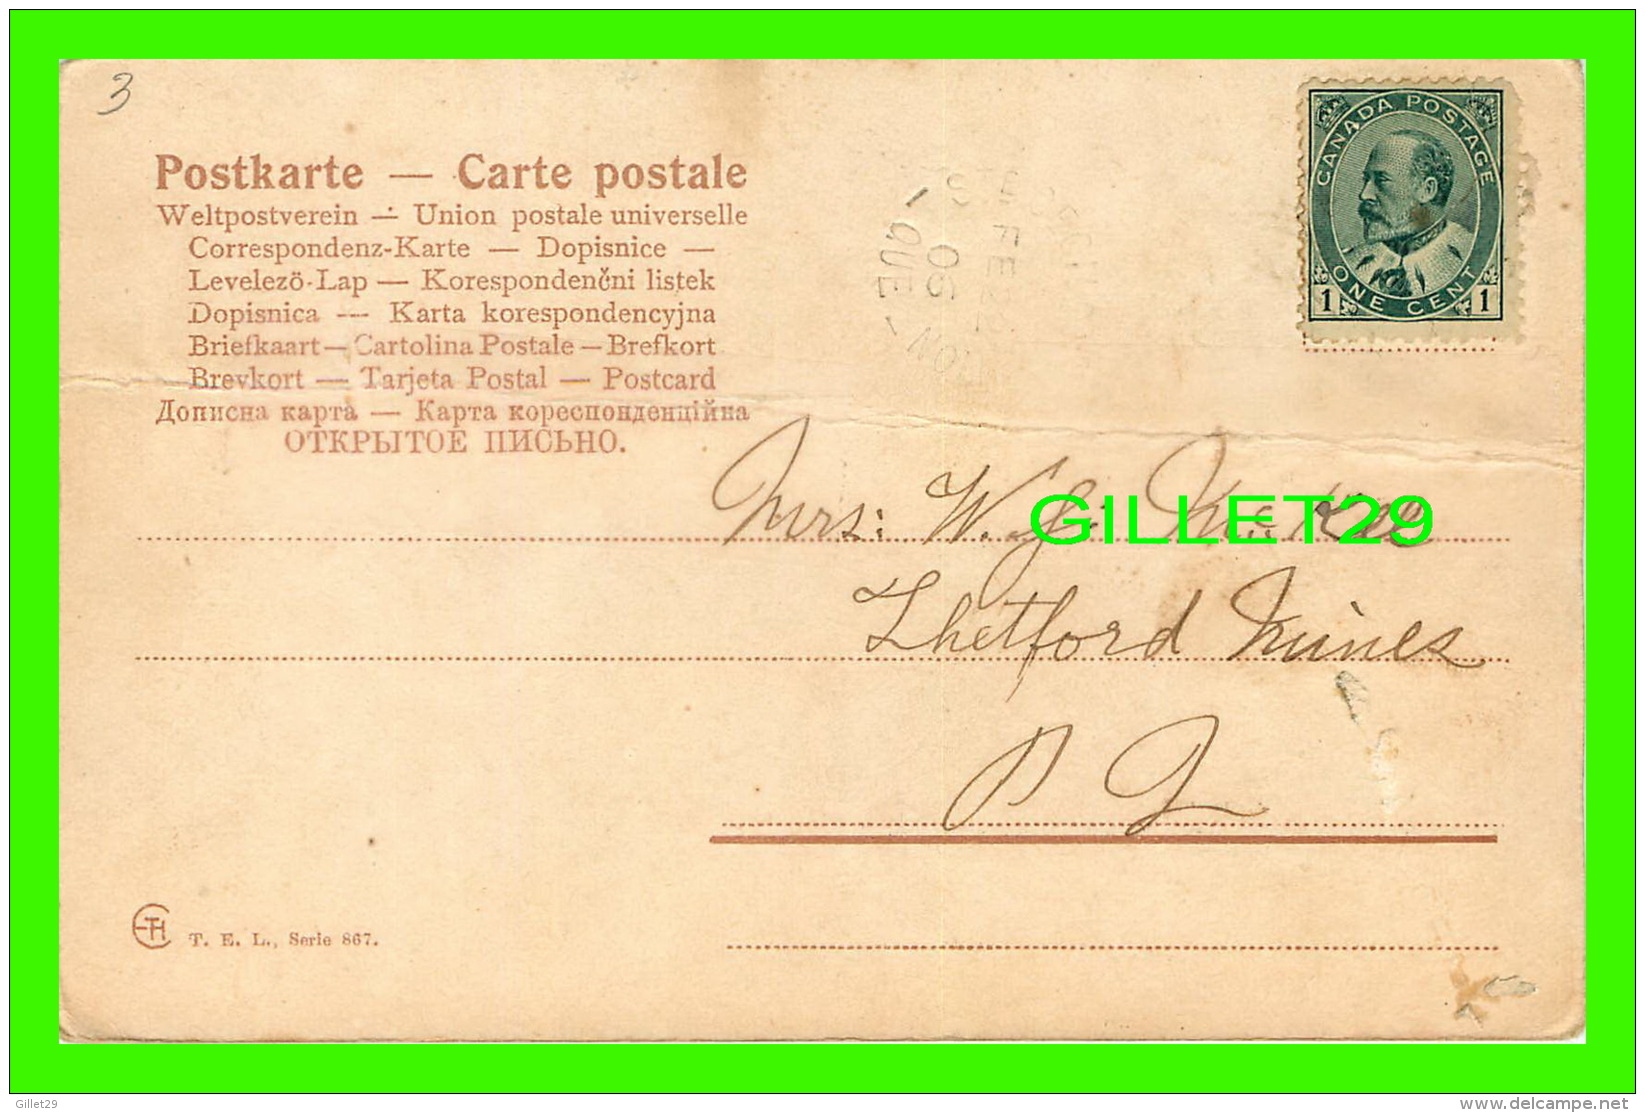 OISEAUX - UN BEL OISEAU PRÈS DE SA CABANE - CIRCULÉE EN 1906 - T. E. L. No 867 - - Oiseaux